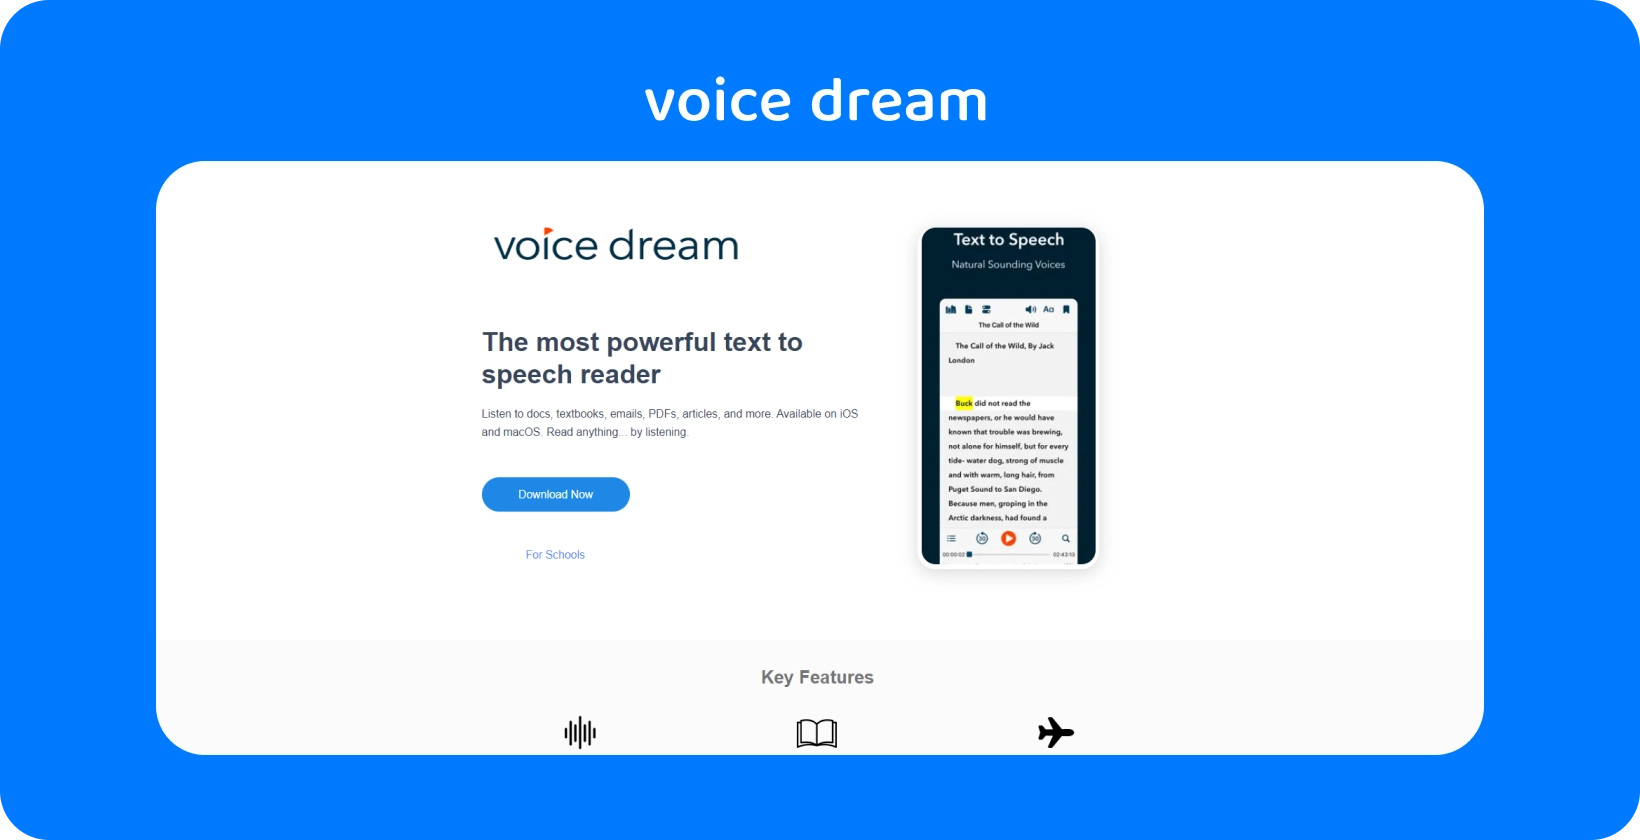 Die Benutzeroberfläche der Voice Dream-App bietet einen leistungsstarken Text-to-Speech-Reader für verschiedene Dokumente auf mobilen Geräten.